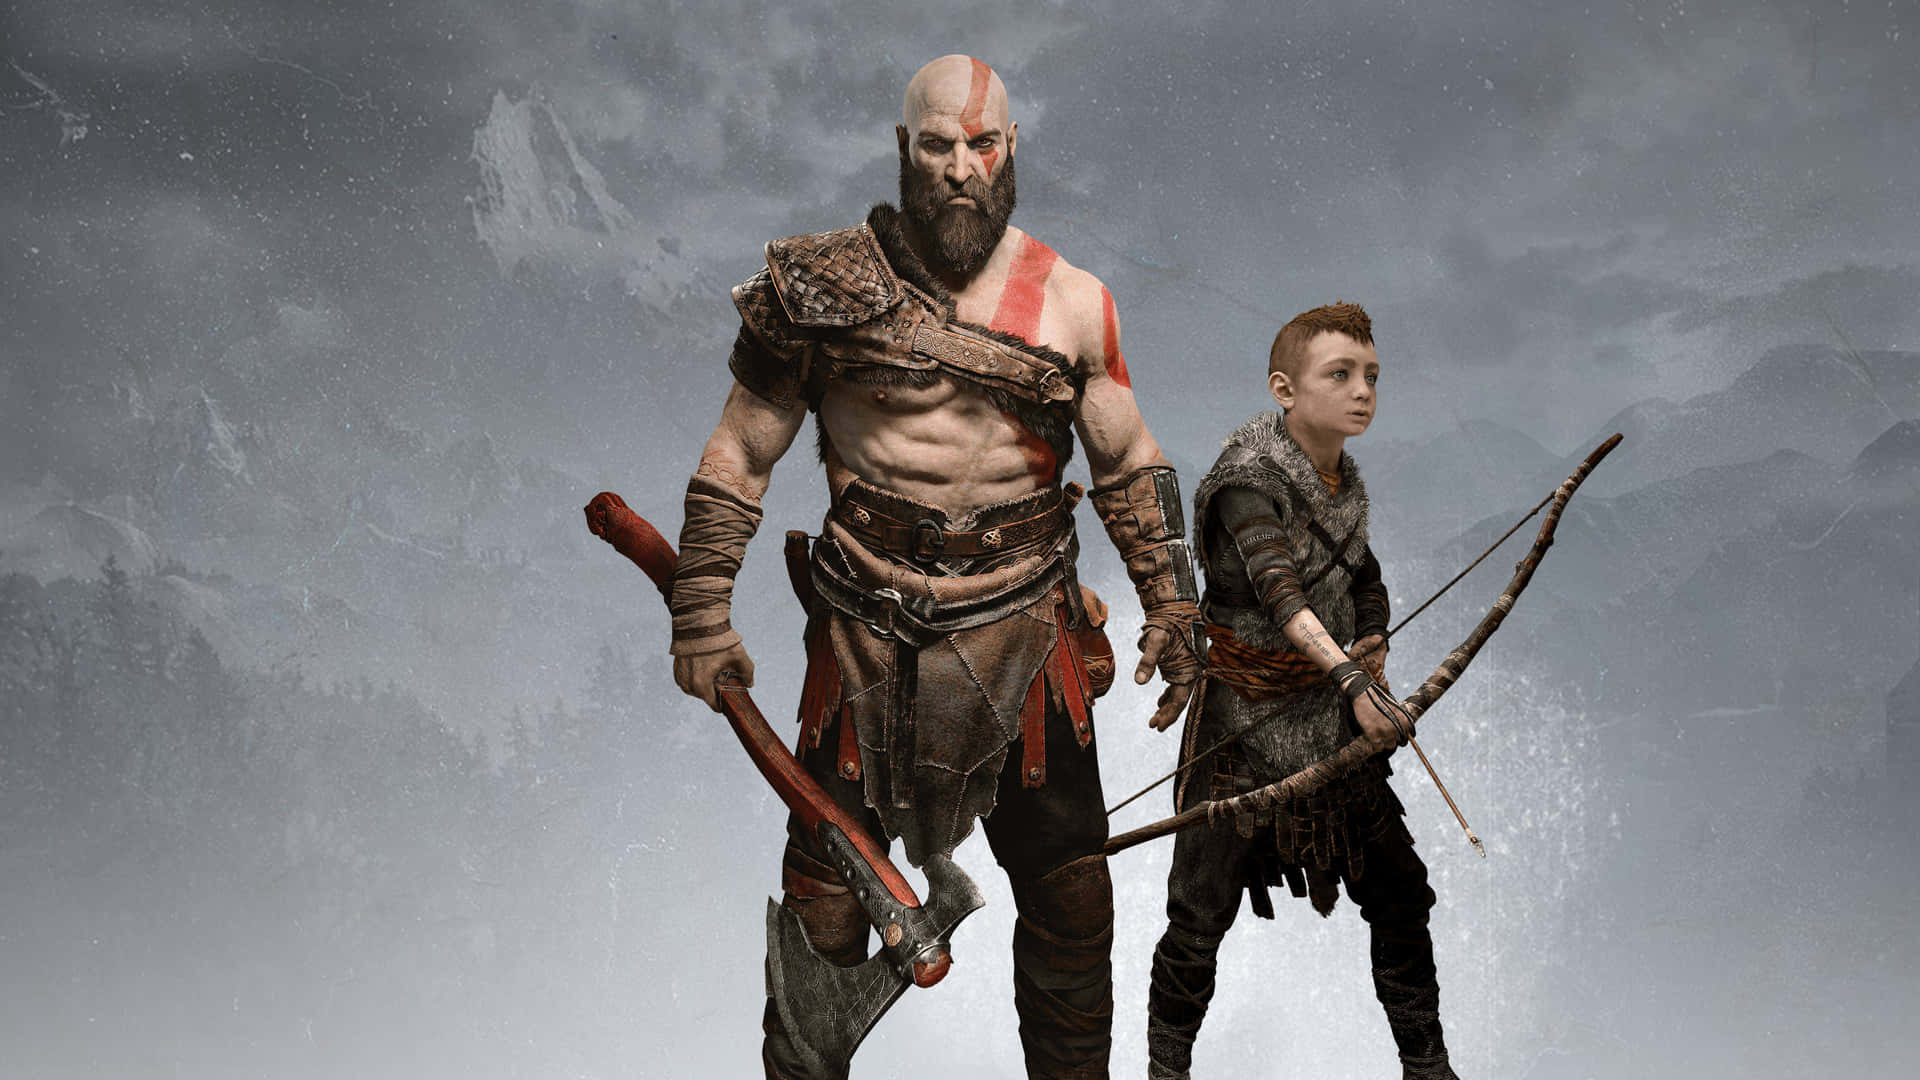 Escenaépica De Batalla Con Kratos Y Atreus De God Of War. Fondo de pantalla